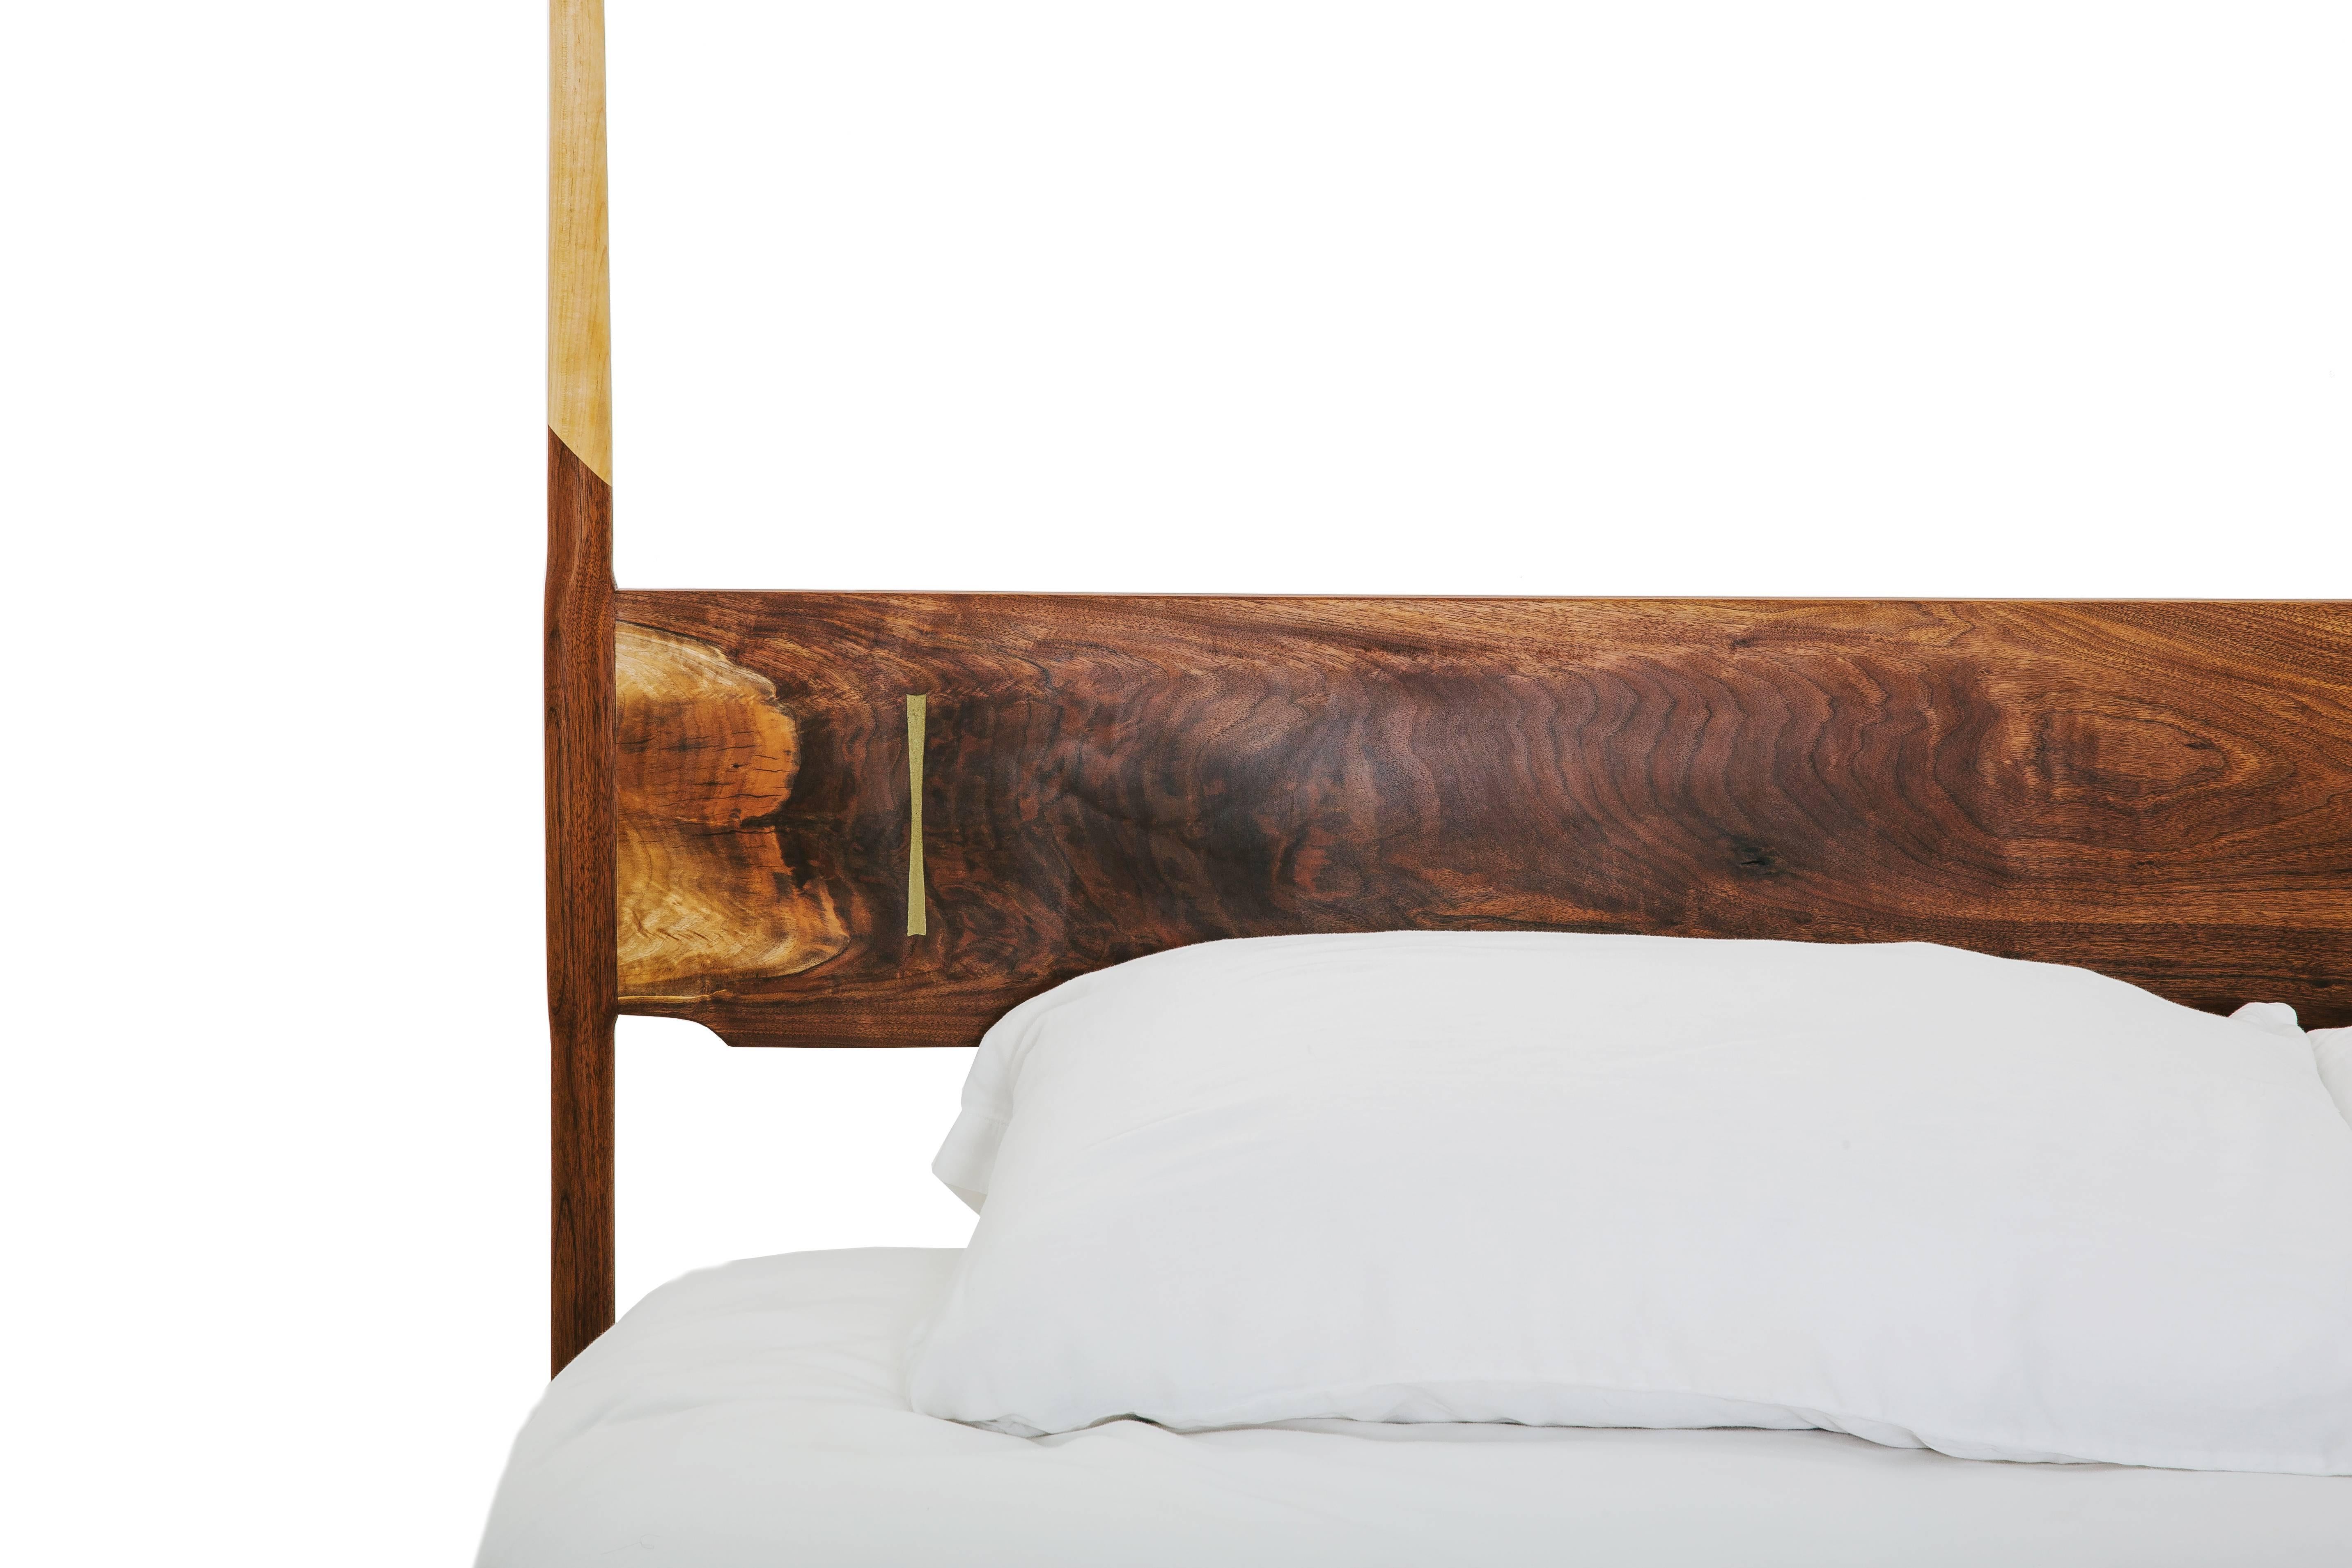 Four Post Mid Century Modern, handgefertigtes Bett mit Massivholzkonstruktion, handgeschnittener Tischlerei und maßgefertigter Dutchman-Verbindung. Handgefertigt in Los Angeles, Kalifornien.

Der Bettrahmen ist in King oder Queen